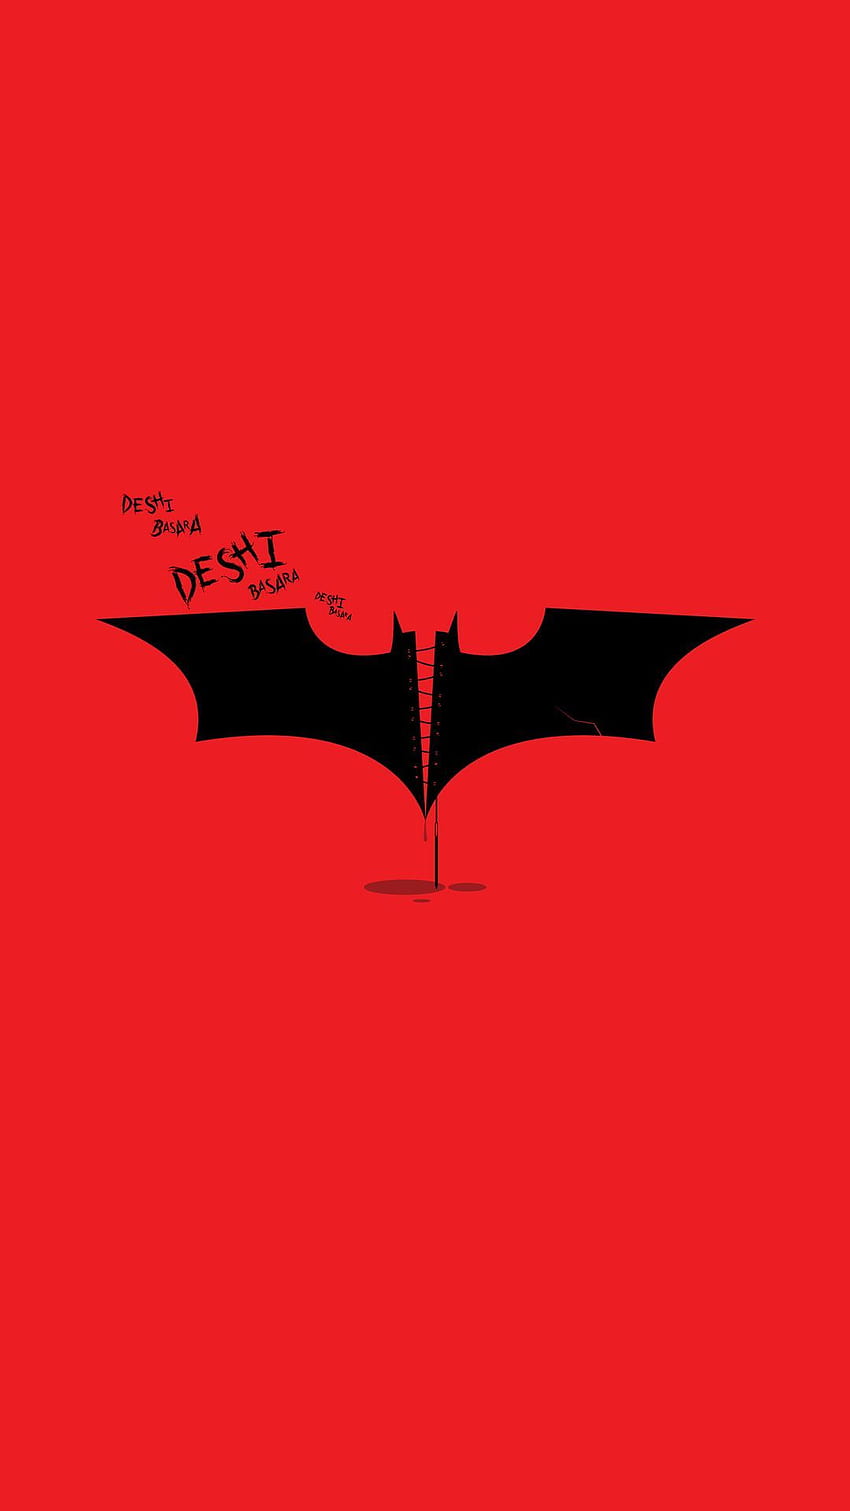 Batman Deshi Basara The Dark Knight Rises IPhone . The dark knight rises,  iPhone , Superman, Batman Aesthetic HD phone wallpaper | Pxfuel